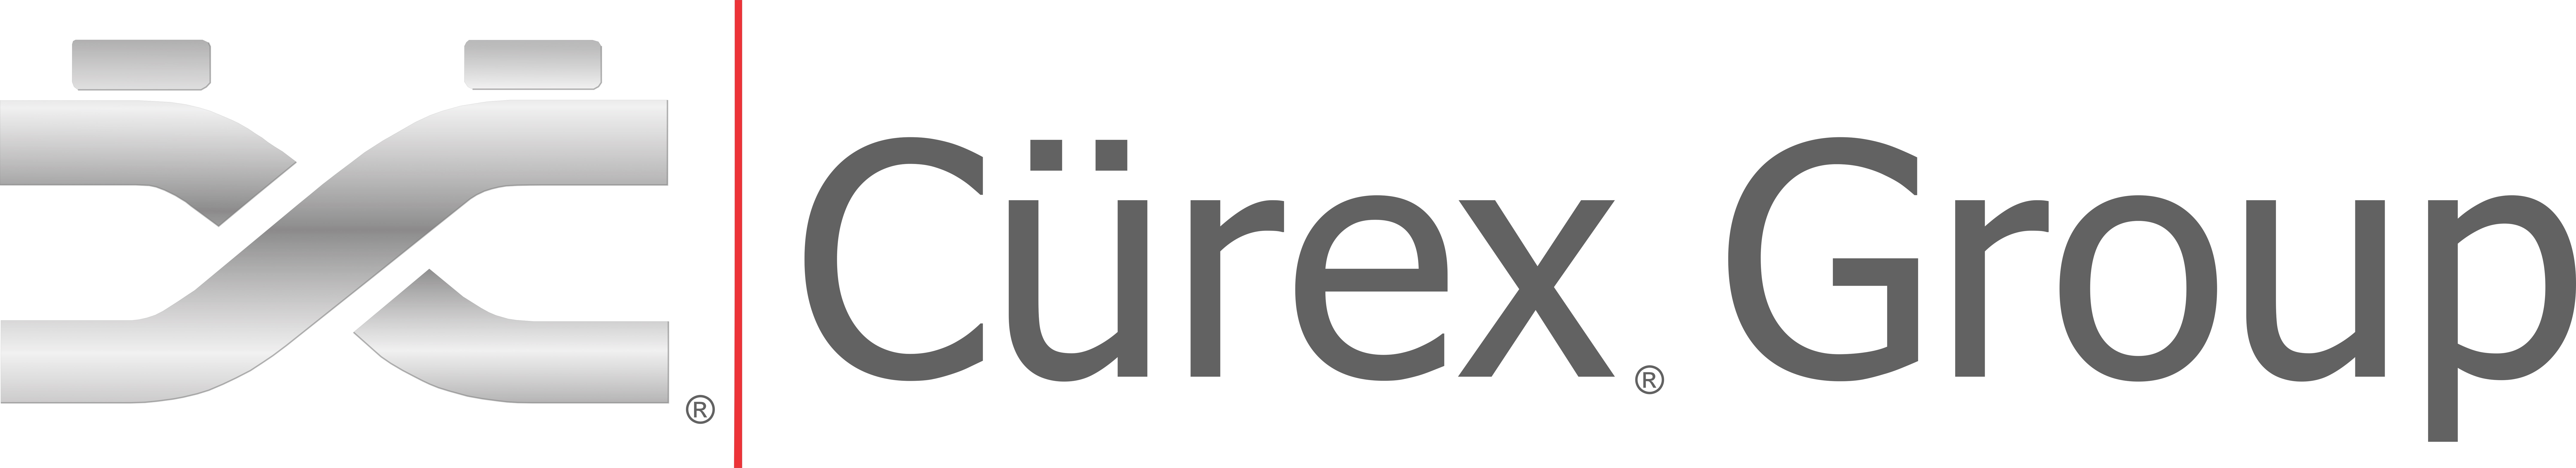 Cürex Group Announces Additional Algorithmic Platform ...